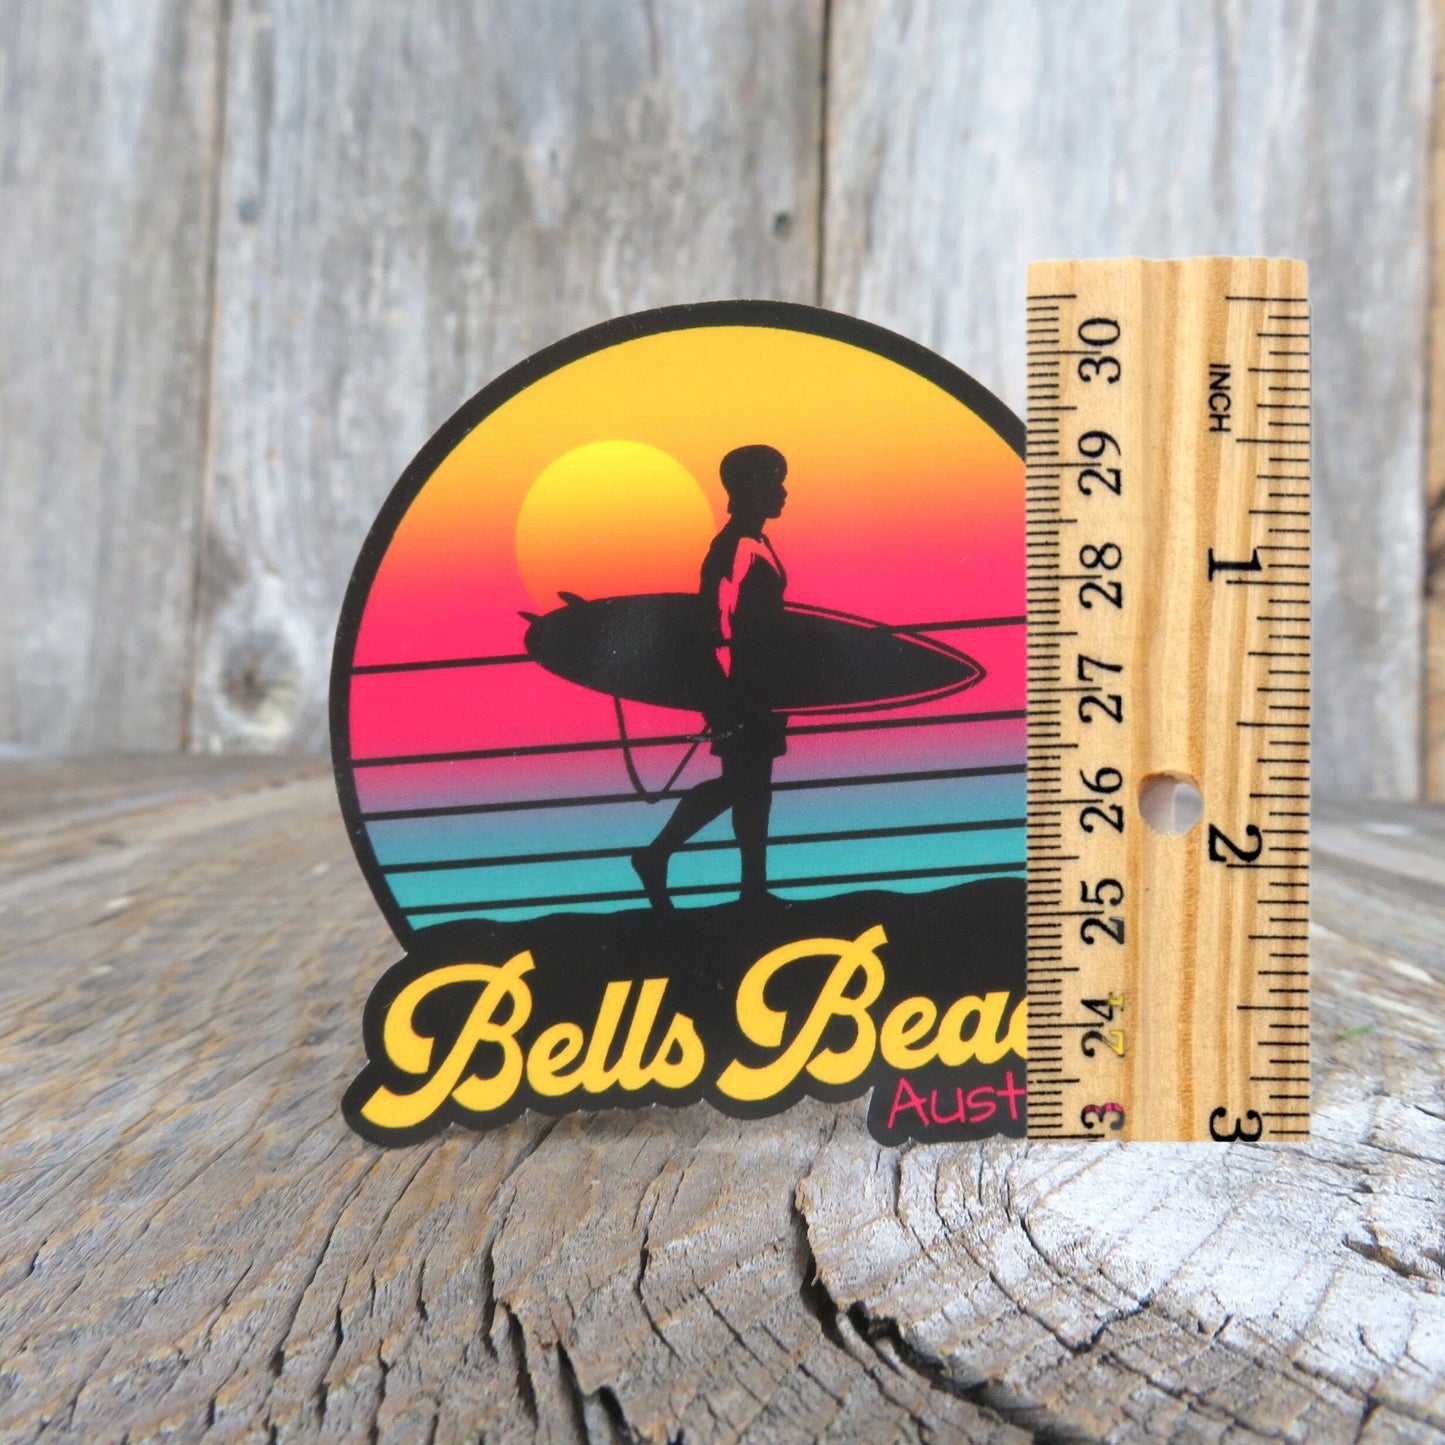 Bells Beach Australia Sticker Surfing Retro Sunset Souvenir Travel Sticker